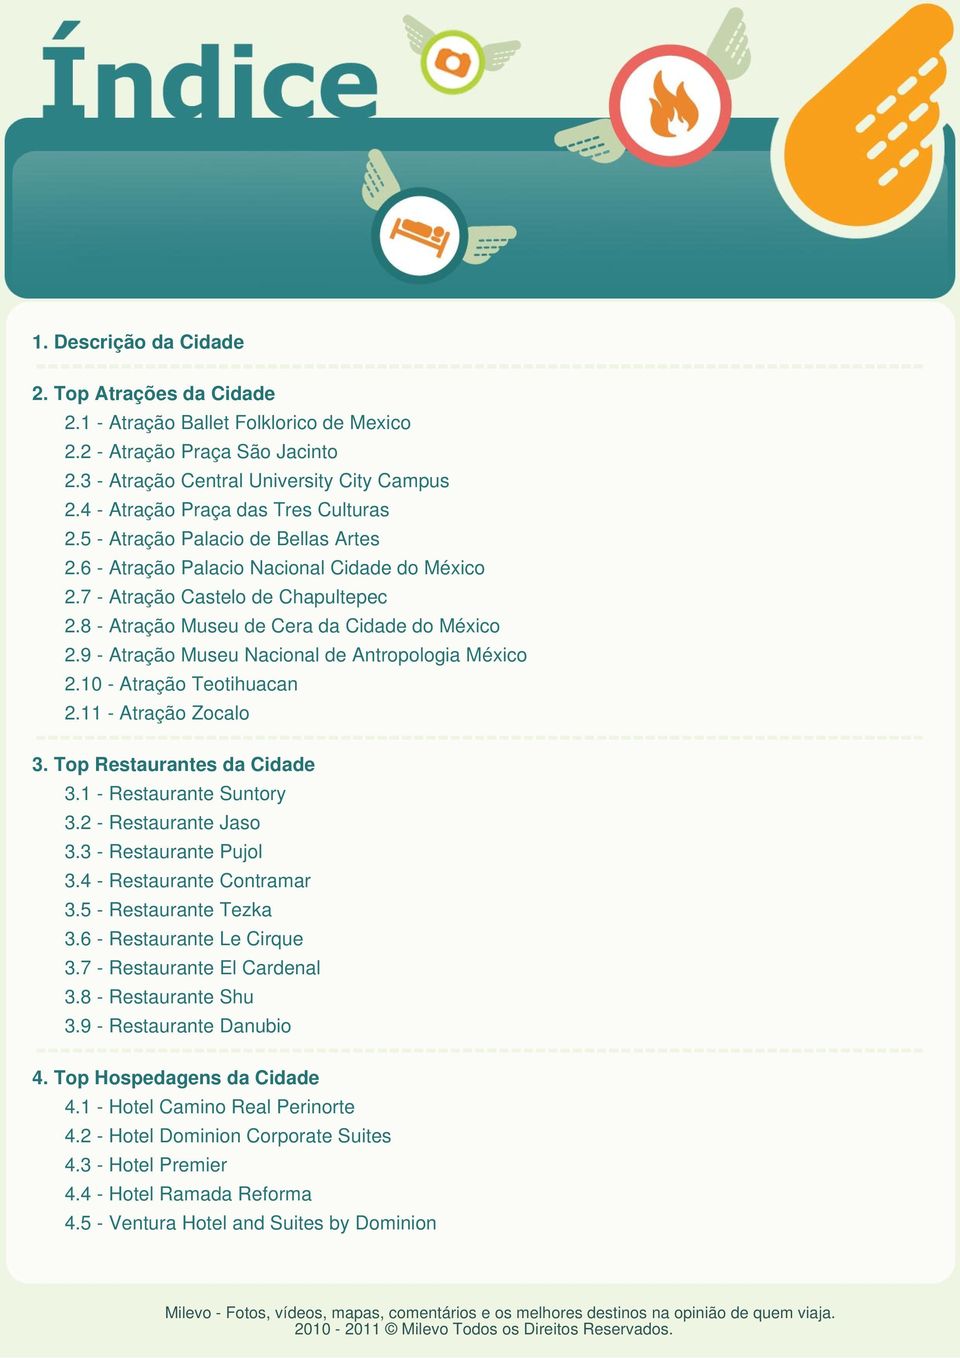 8 - Atração Museu de Cera da Cidade do México 2.9 - Atração Museu Nacional de Antropologia México 2.10 - Atração Teotihuacan 2.11 - Atração Zocalo 3. Top Restaurantes da Cidade 3.